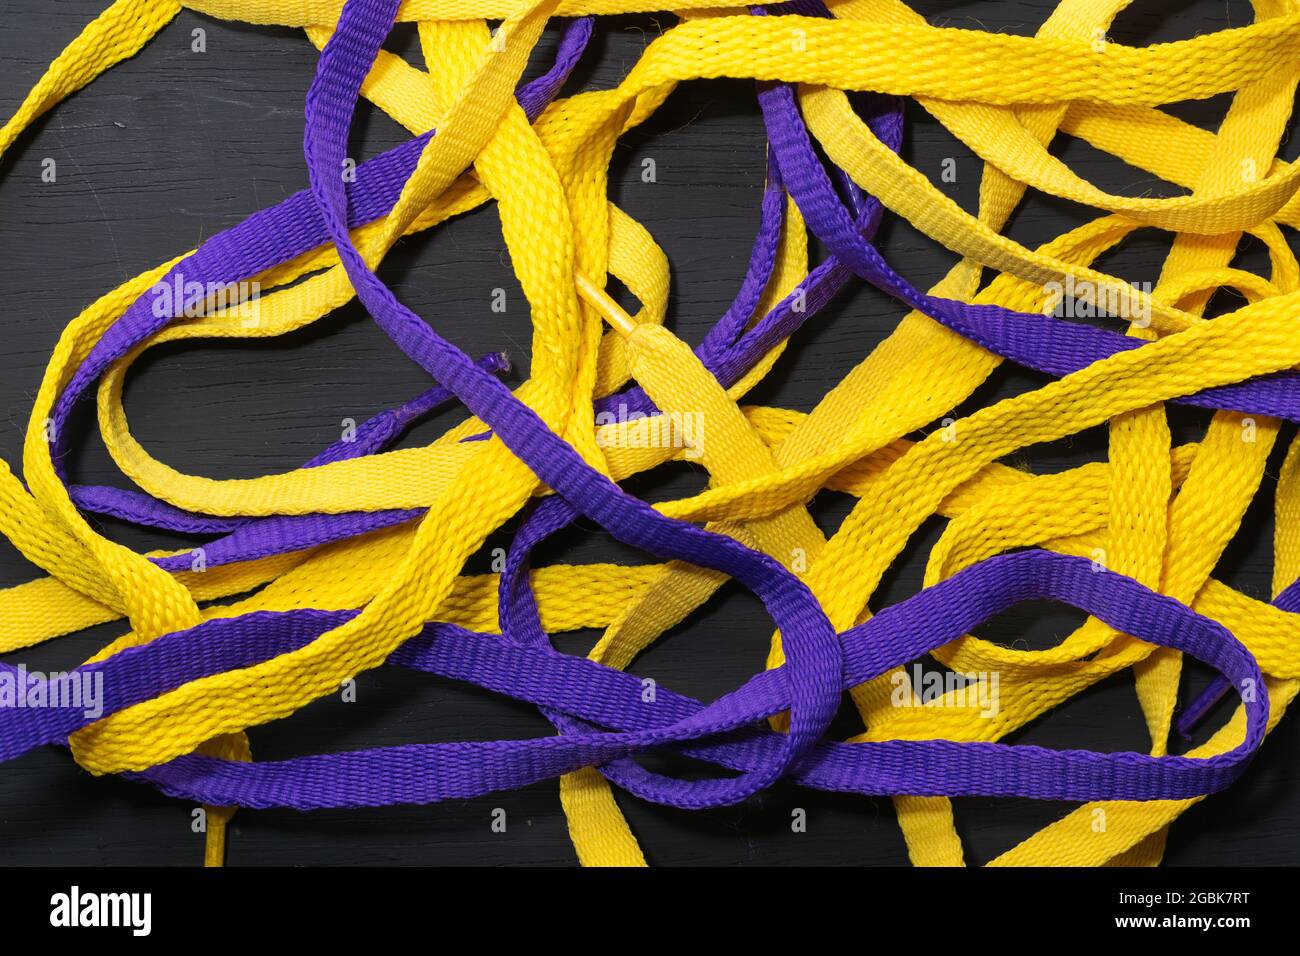 Lacets jaunes et violets, drapeau Lakers, soigneusement placé sur fond en bois noir, laissant de l'espace pour le texte publicitaire Banque D'Images